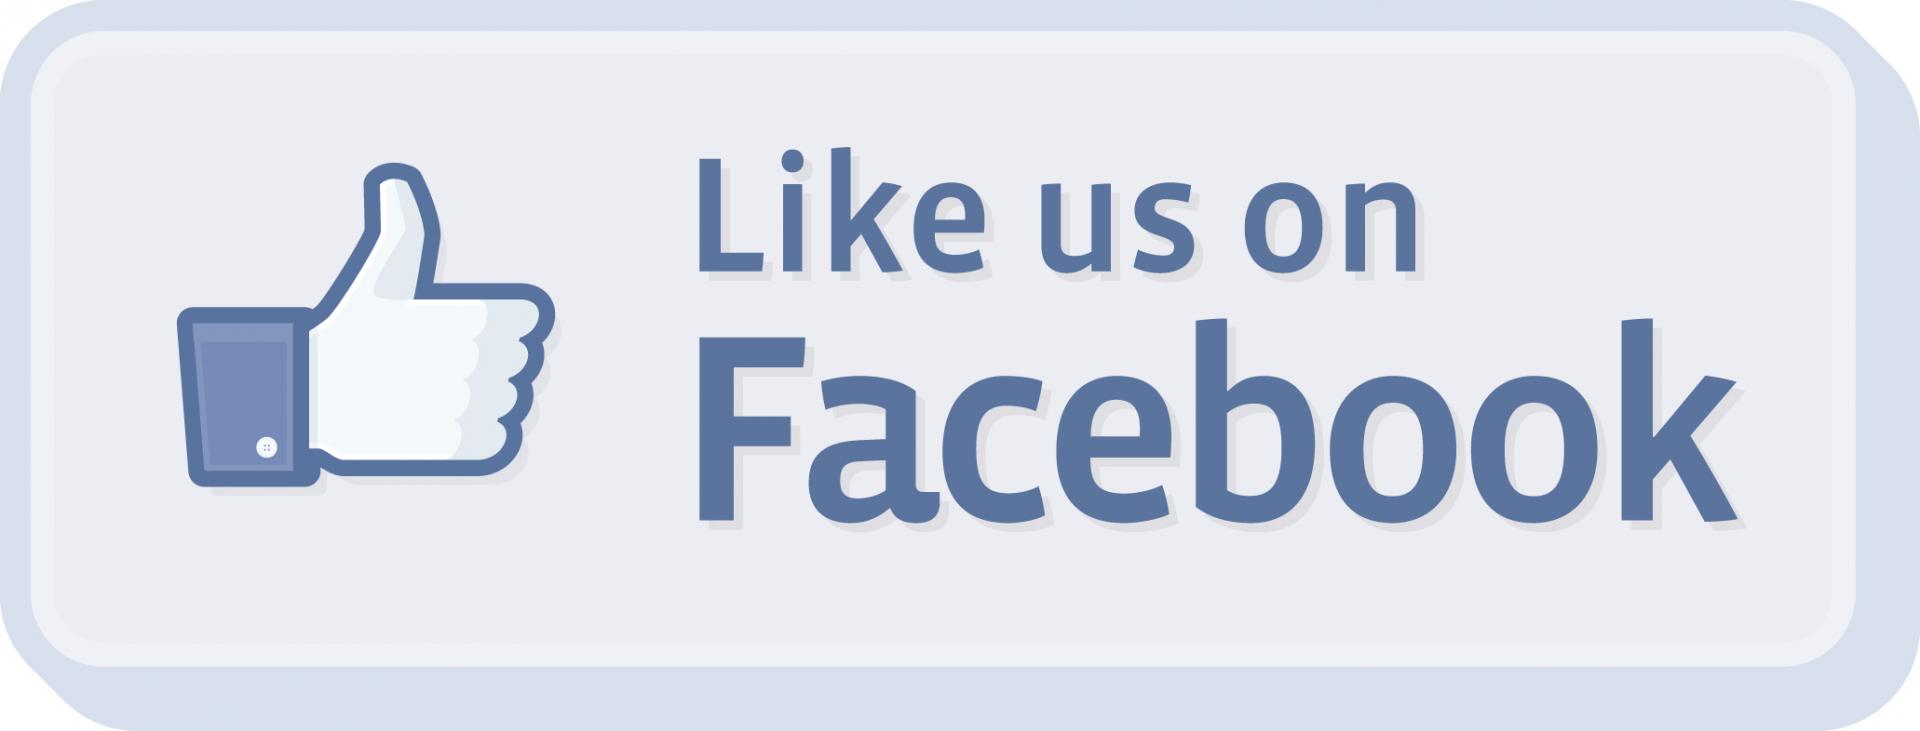 Like us on facebook logo